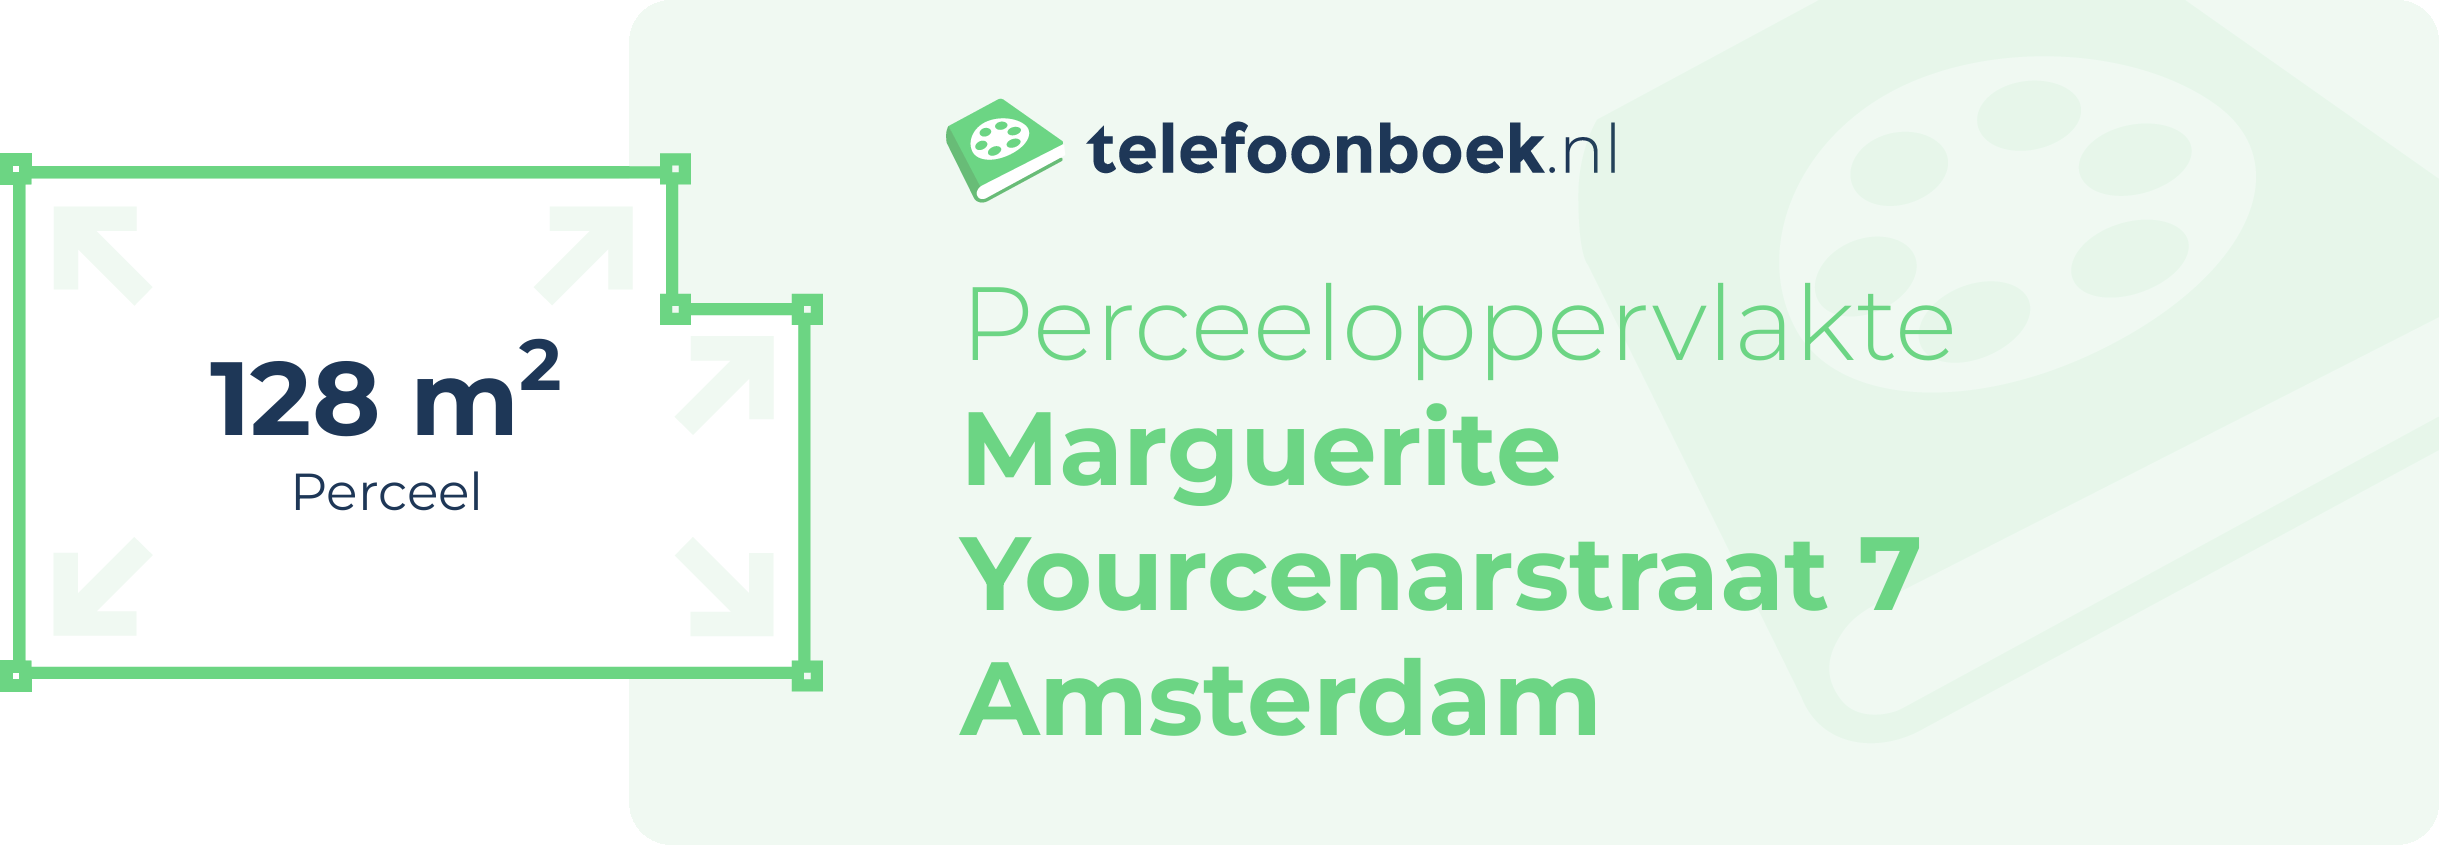 Perceeloppervlakte Marguerite Yourcenarstraat 7 Amsterdam